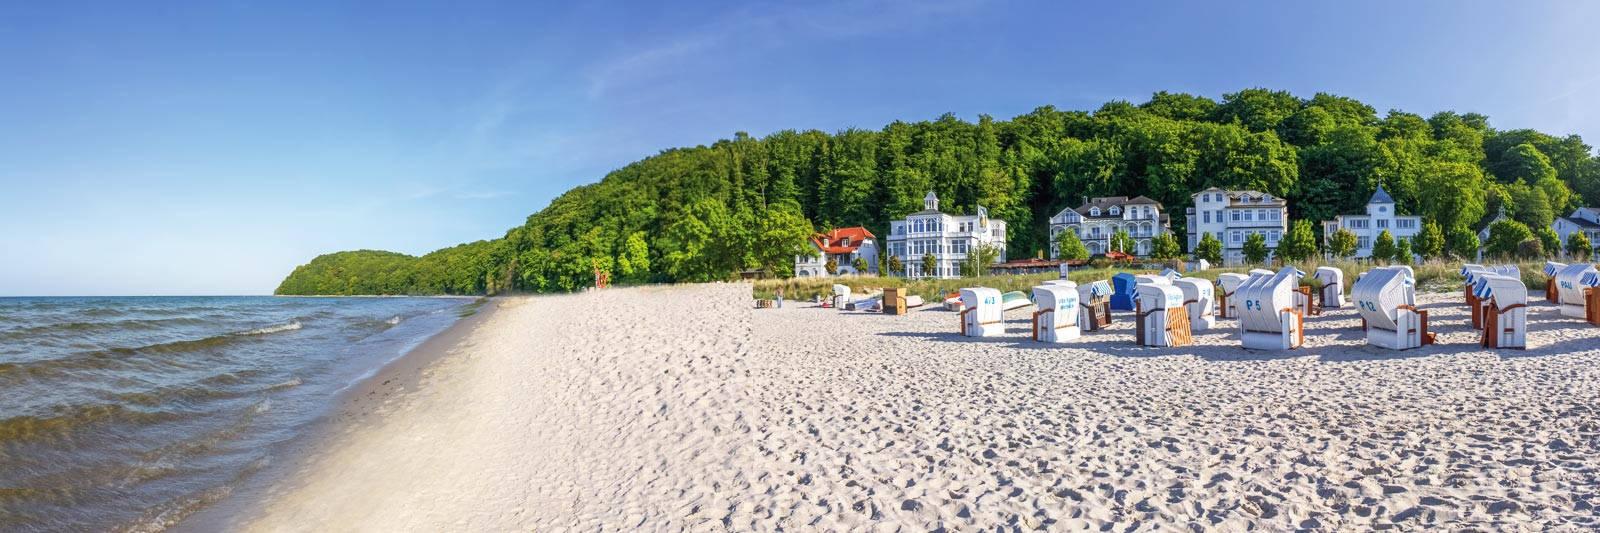 19 Ferienwohnungen und Ferienhäuser in Teterow - tourist-online.de